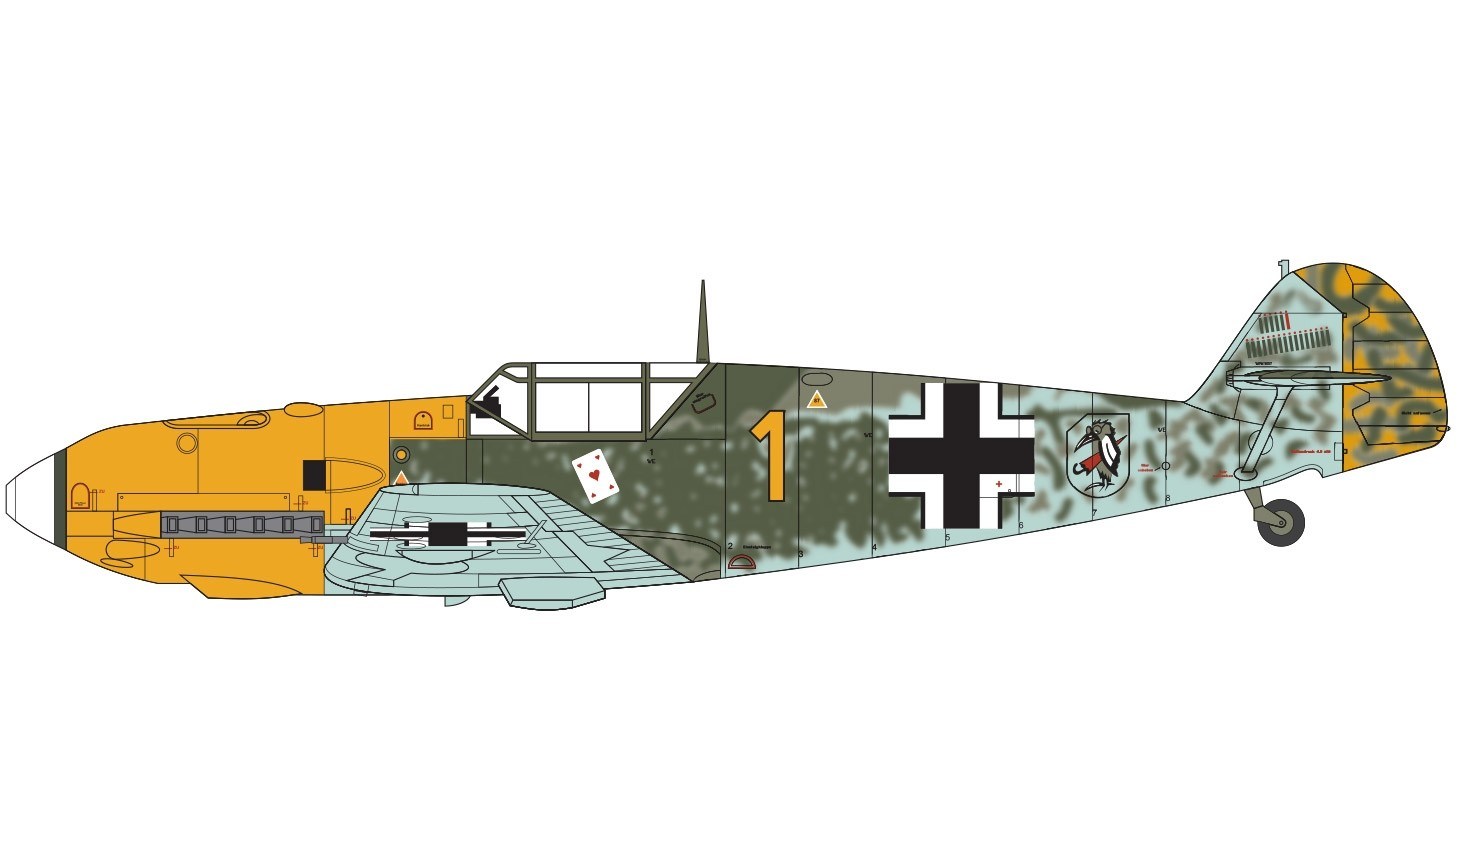 Airfix A05120B MESSERSCHMITT Bf109E-3/E-4